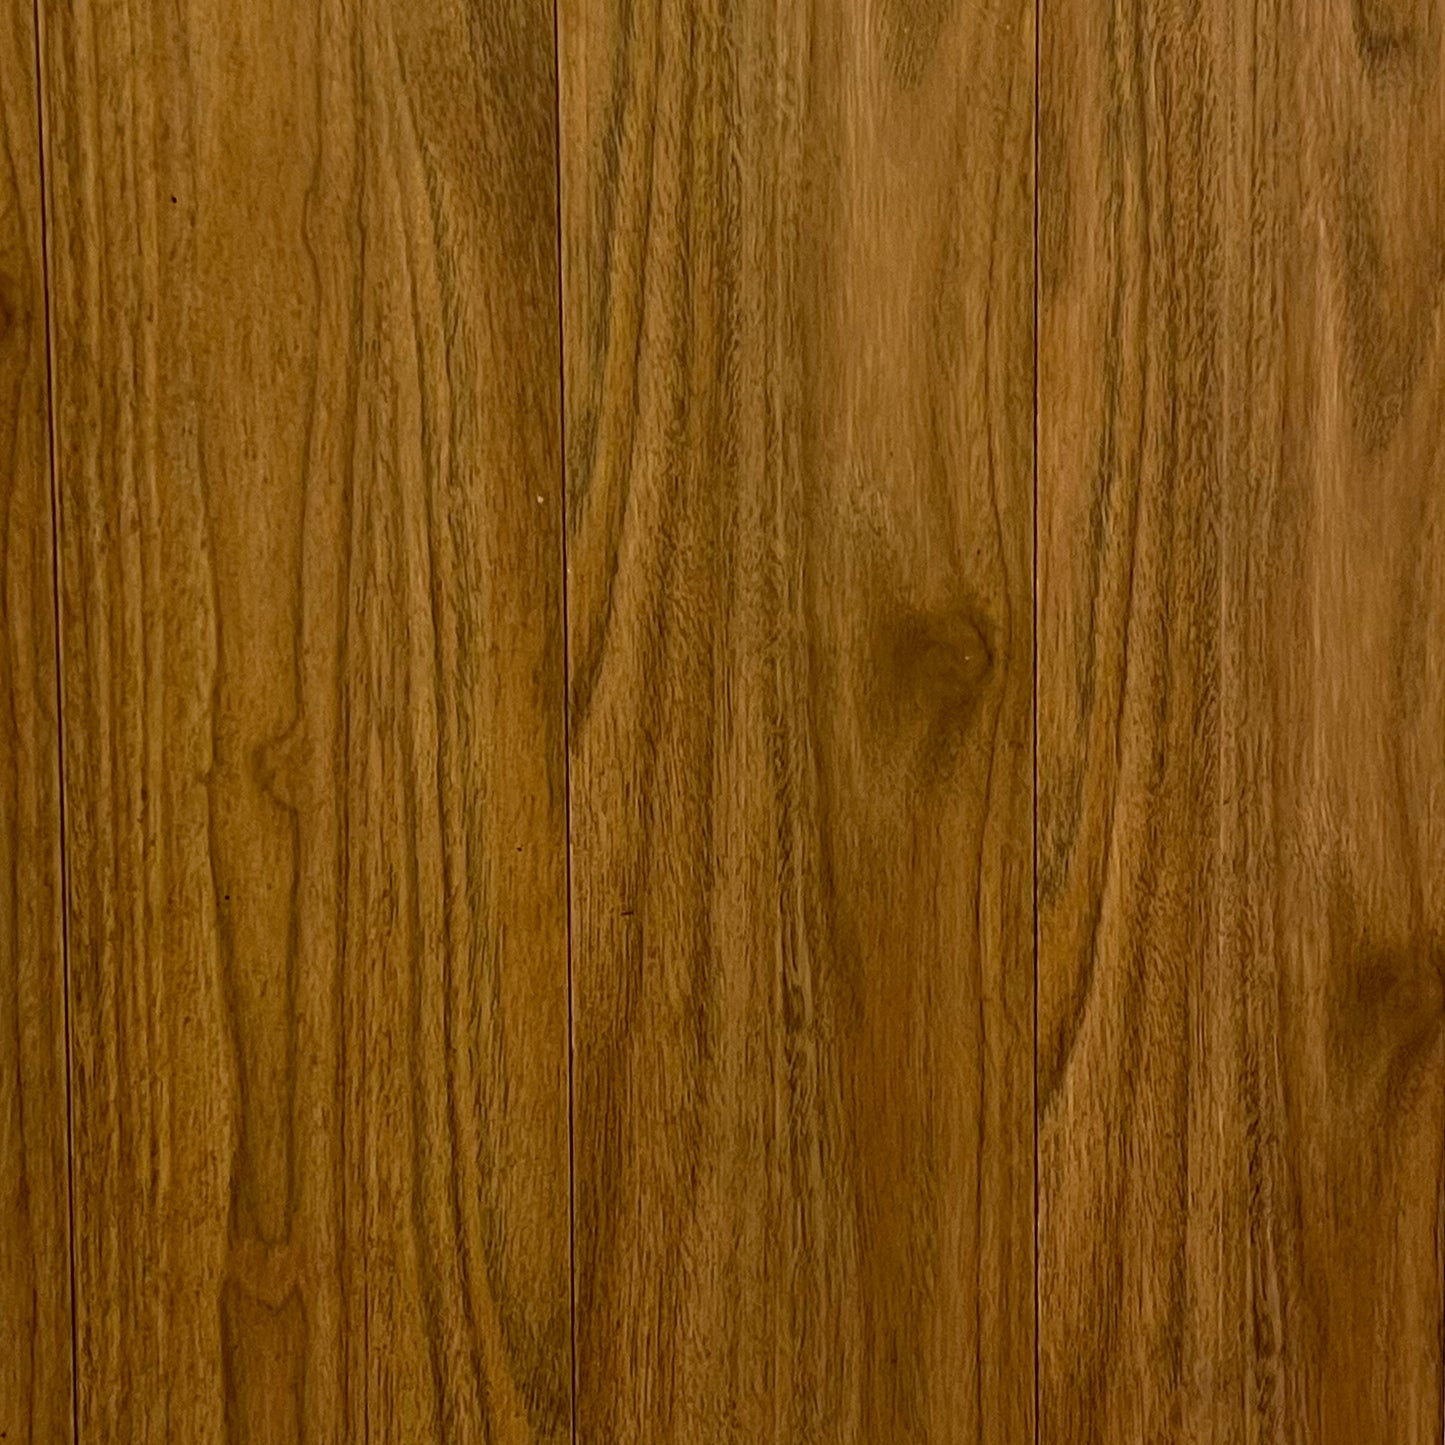 Butt Bamboo Bamboo Flooring by KLD Home